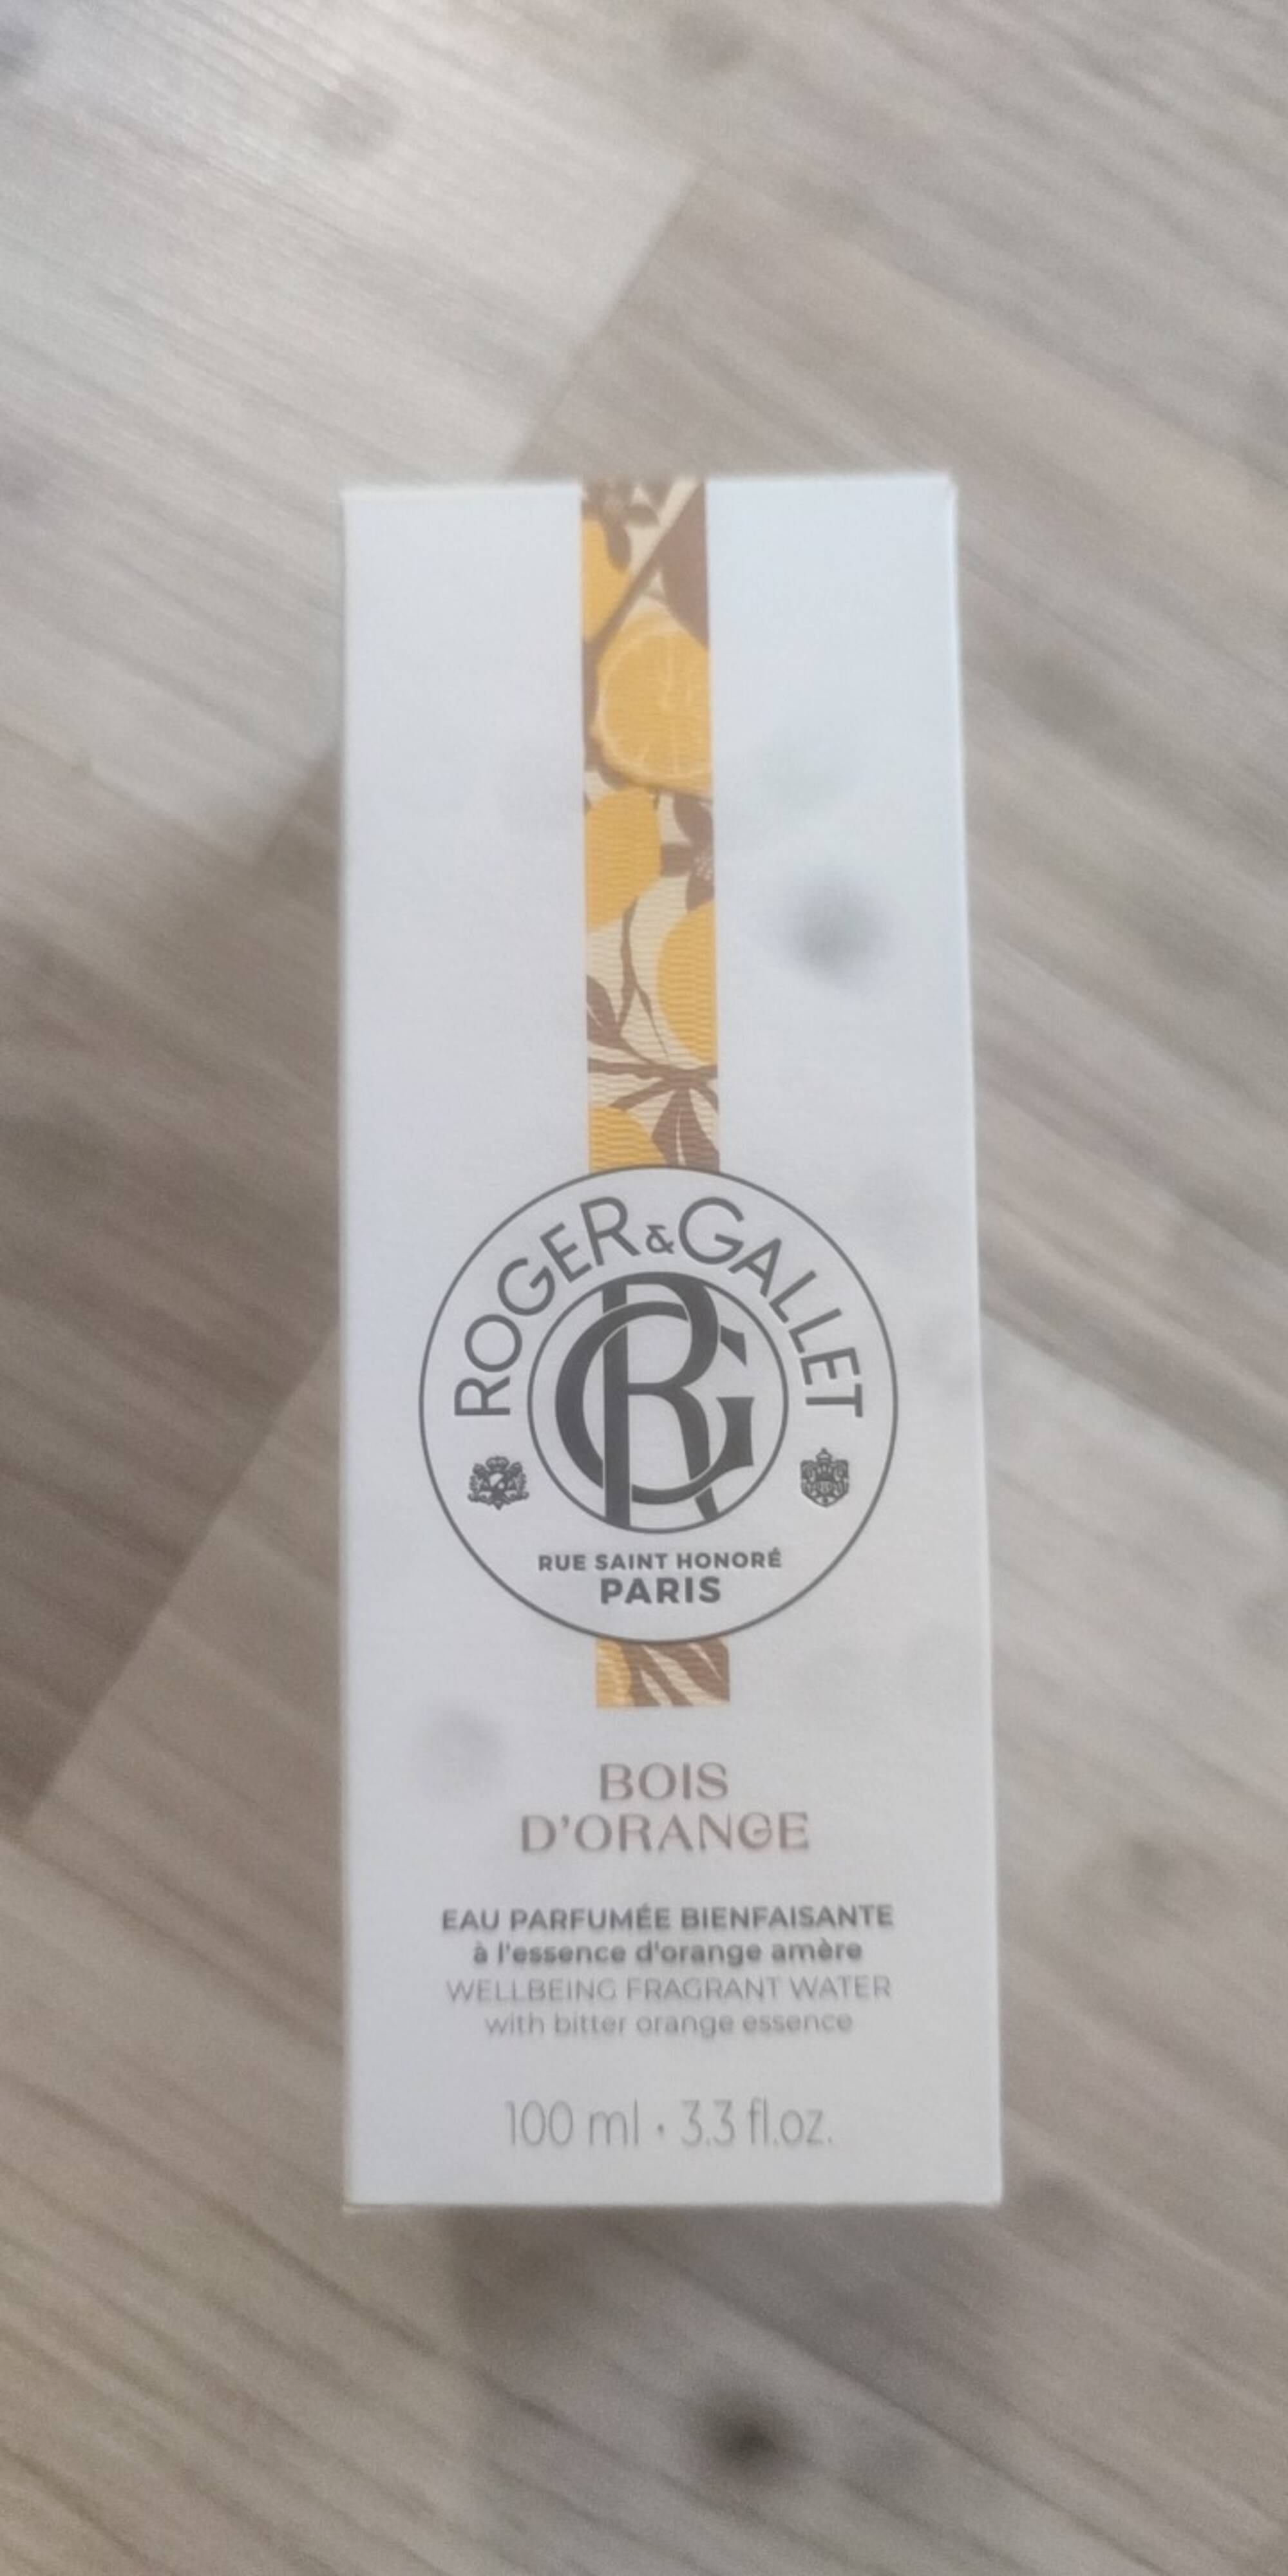 ROGER & GALLET - Bois d'orange - Eau parfumée bienfaisante